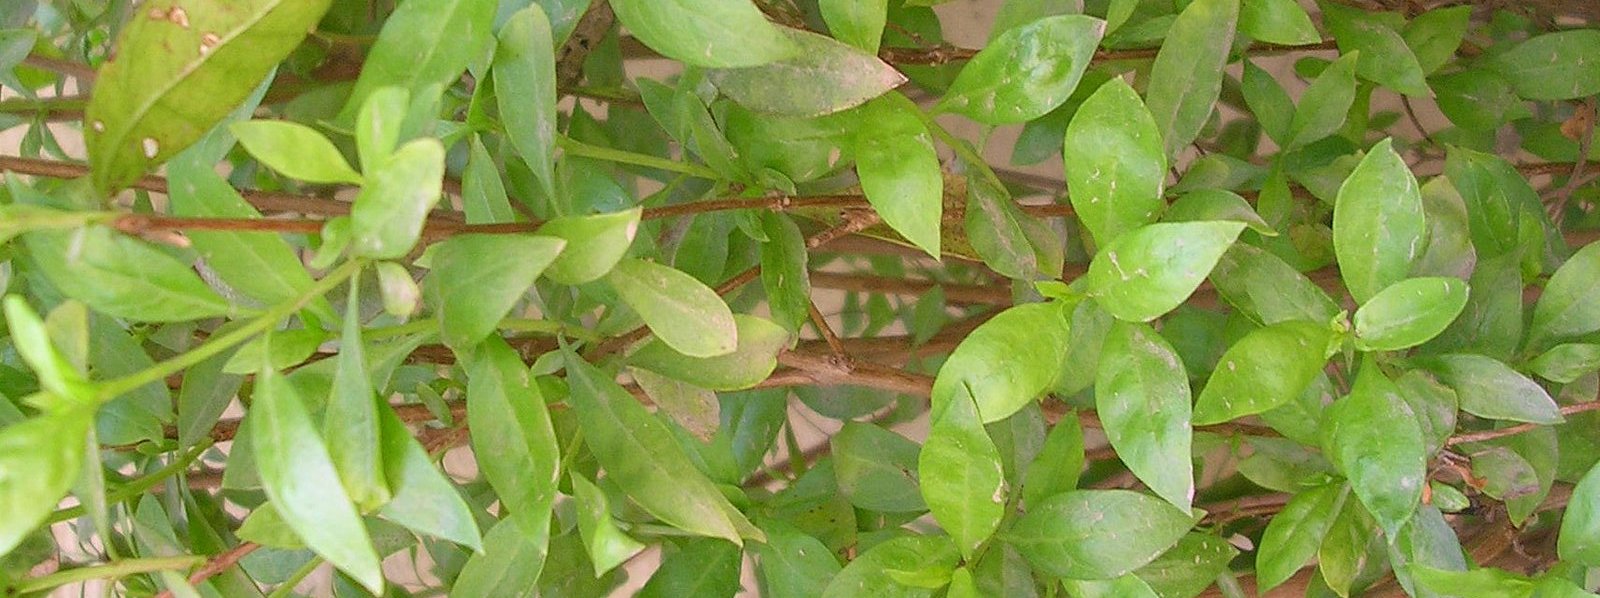 Tender leaves of Henna